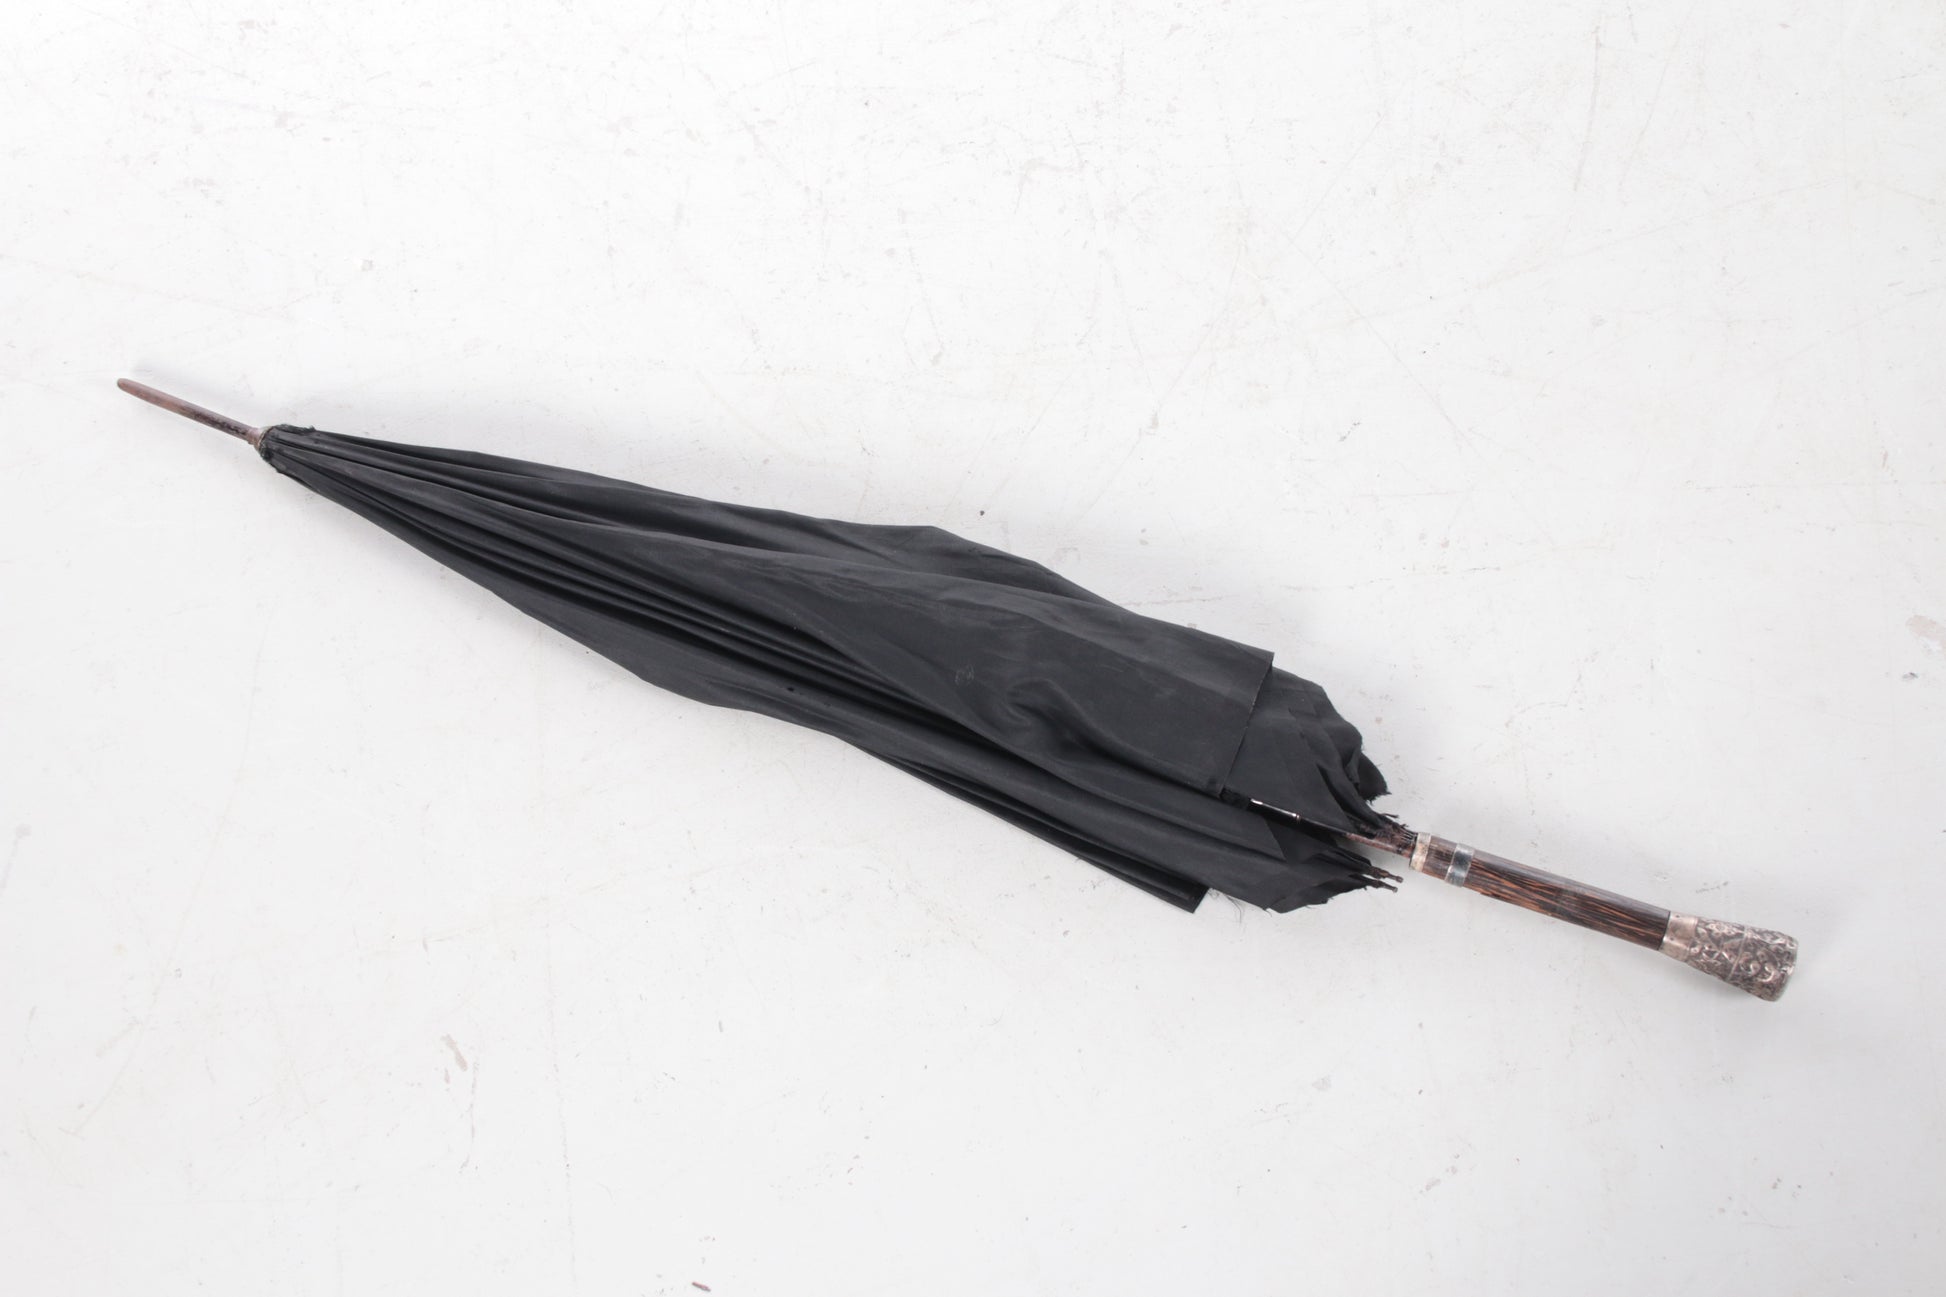 Antieke zwarte paraplu van zijde met zilveren handvat. voorkant